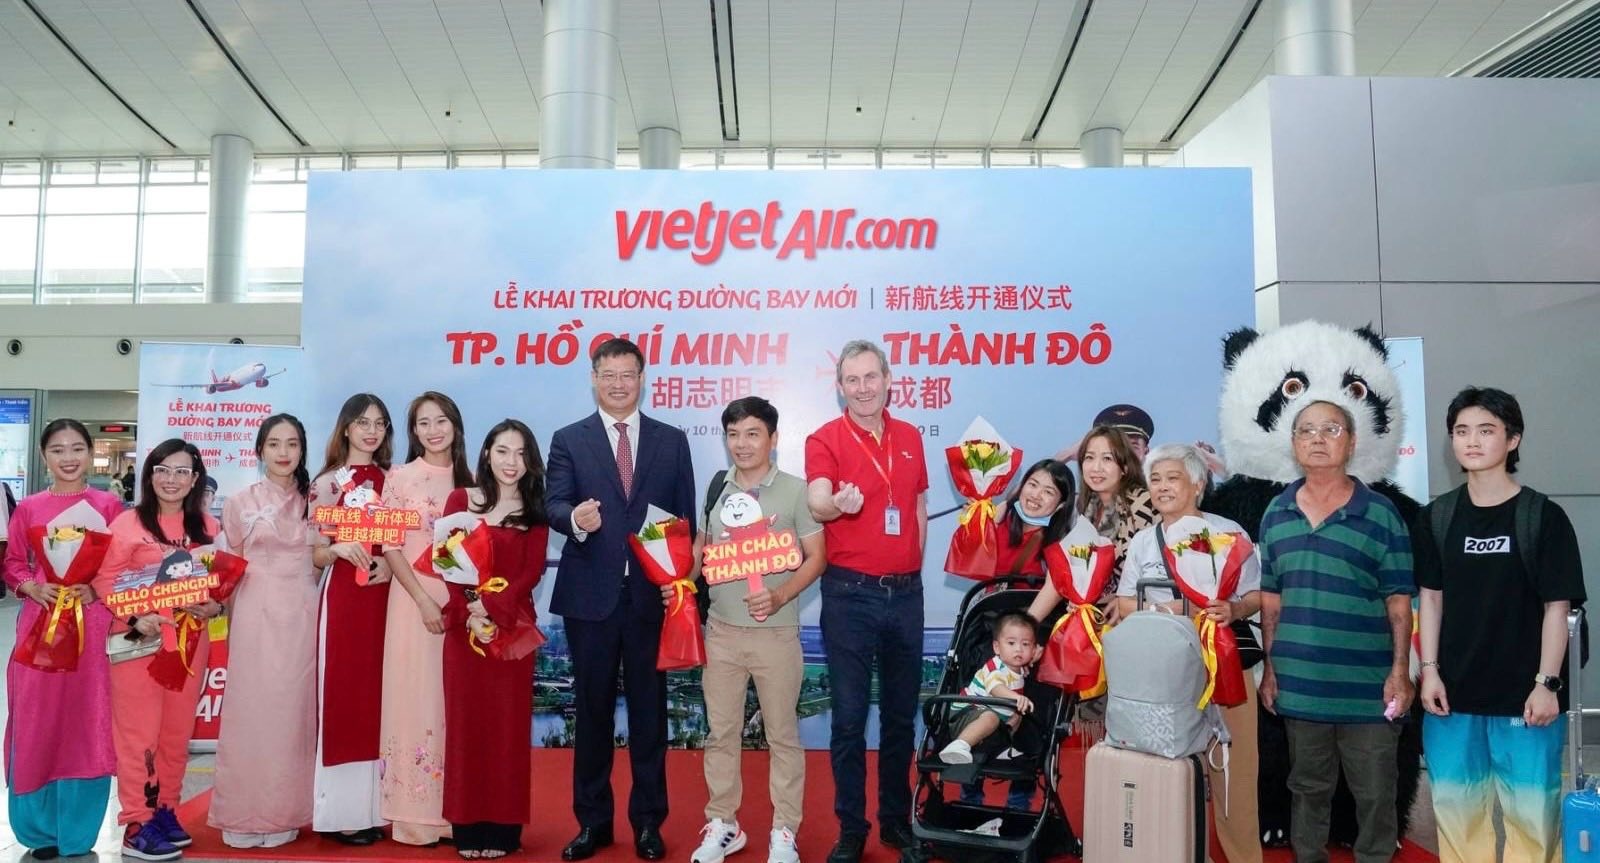 Những hành khách trên chuyến bay khai trương giữa TP. Hồ Chí Minh và Thành Đô được lãnh đạo Vietjet chào đón và chúc mừng năm mới.